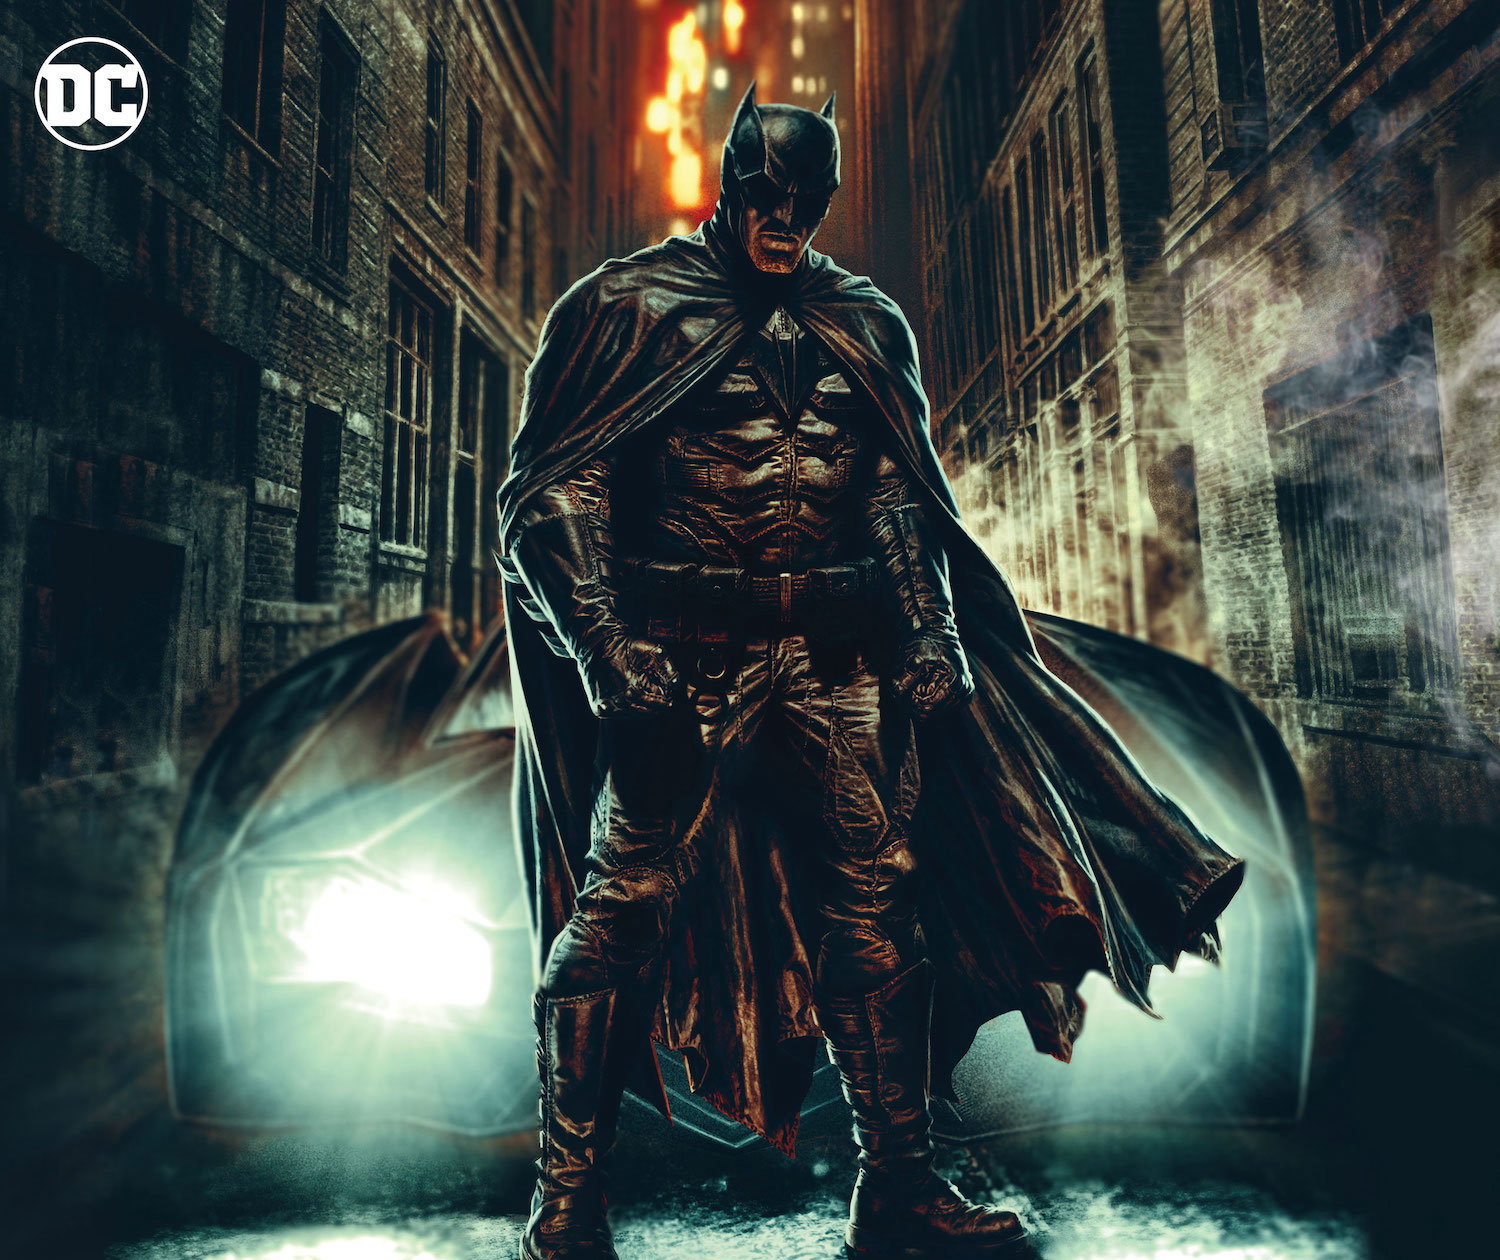 DC Preview: Batman: Dear Detective #1